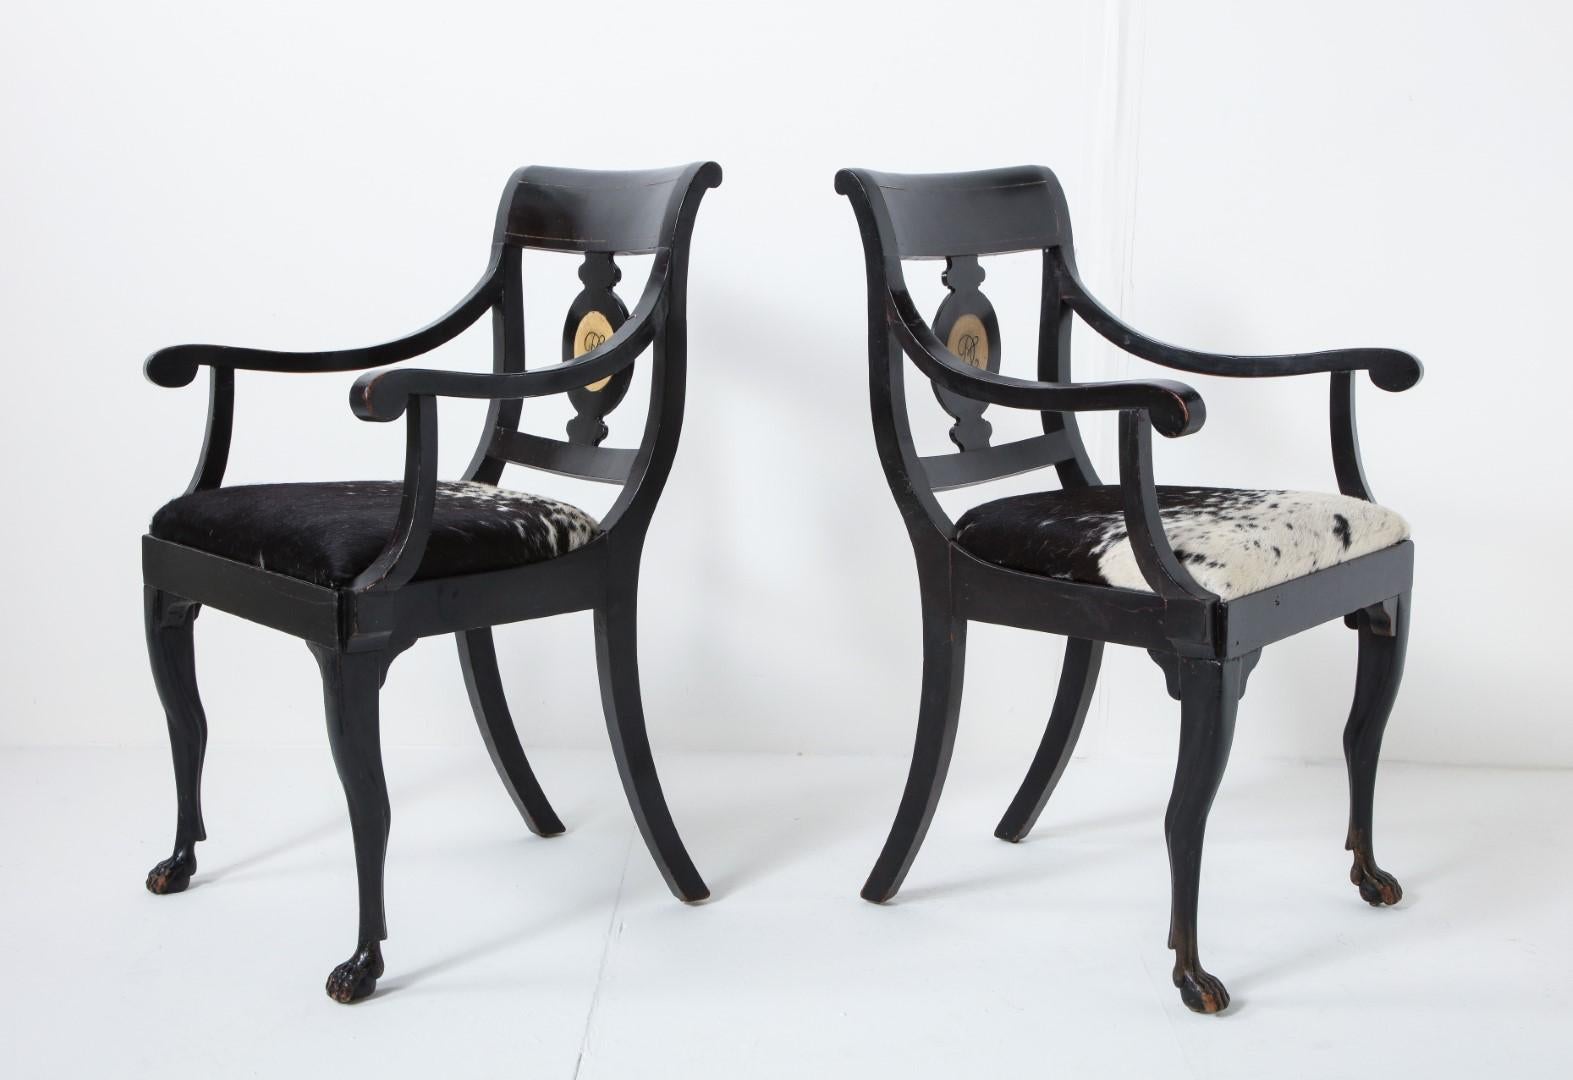 Ein Paar englische ebonisierte Regency-Sessel aus dem 19. Jahrhundert mit handgemaltem Monogramm. Sitze aus natürlichem Ponyfell in Schwarz und Weiß.

Maße: Armhöhe 25